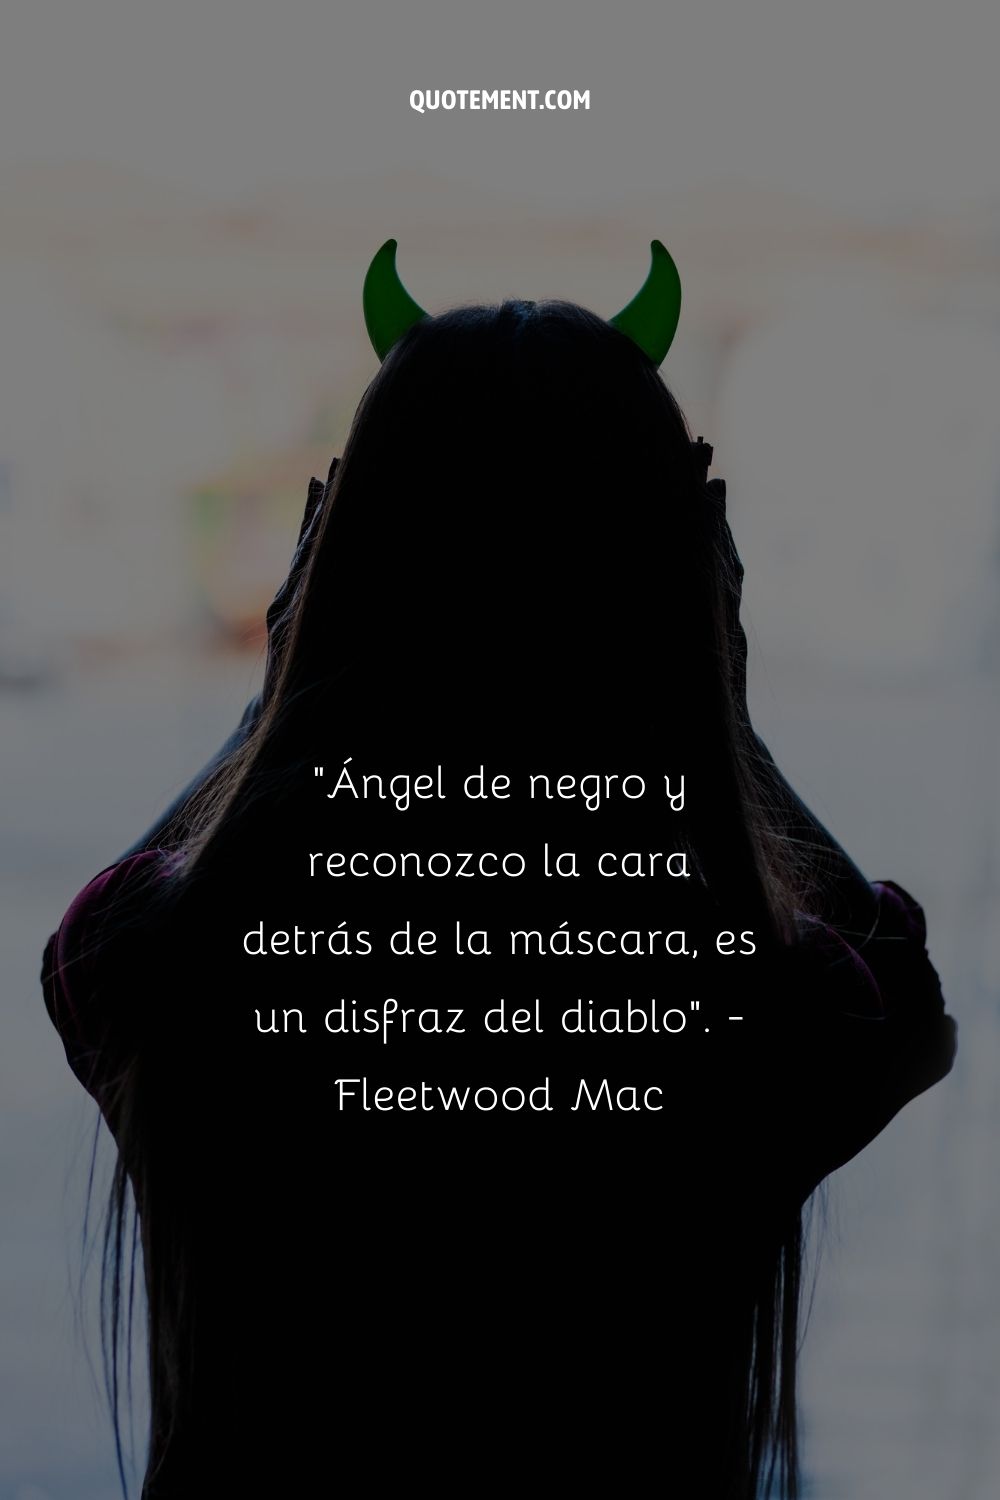 "Ángel de negro y reconozco la cara detrás de la máscara, es un disfraz del diablo". - Fleetwood Mac